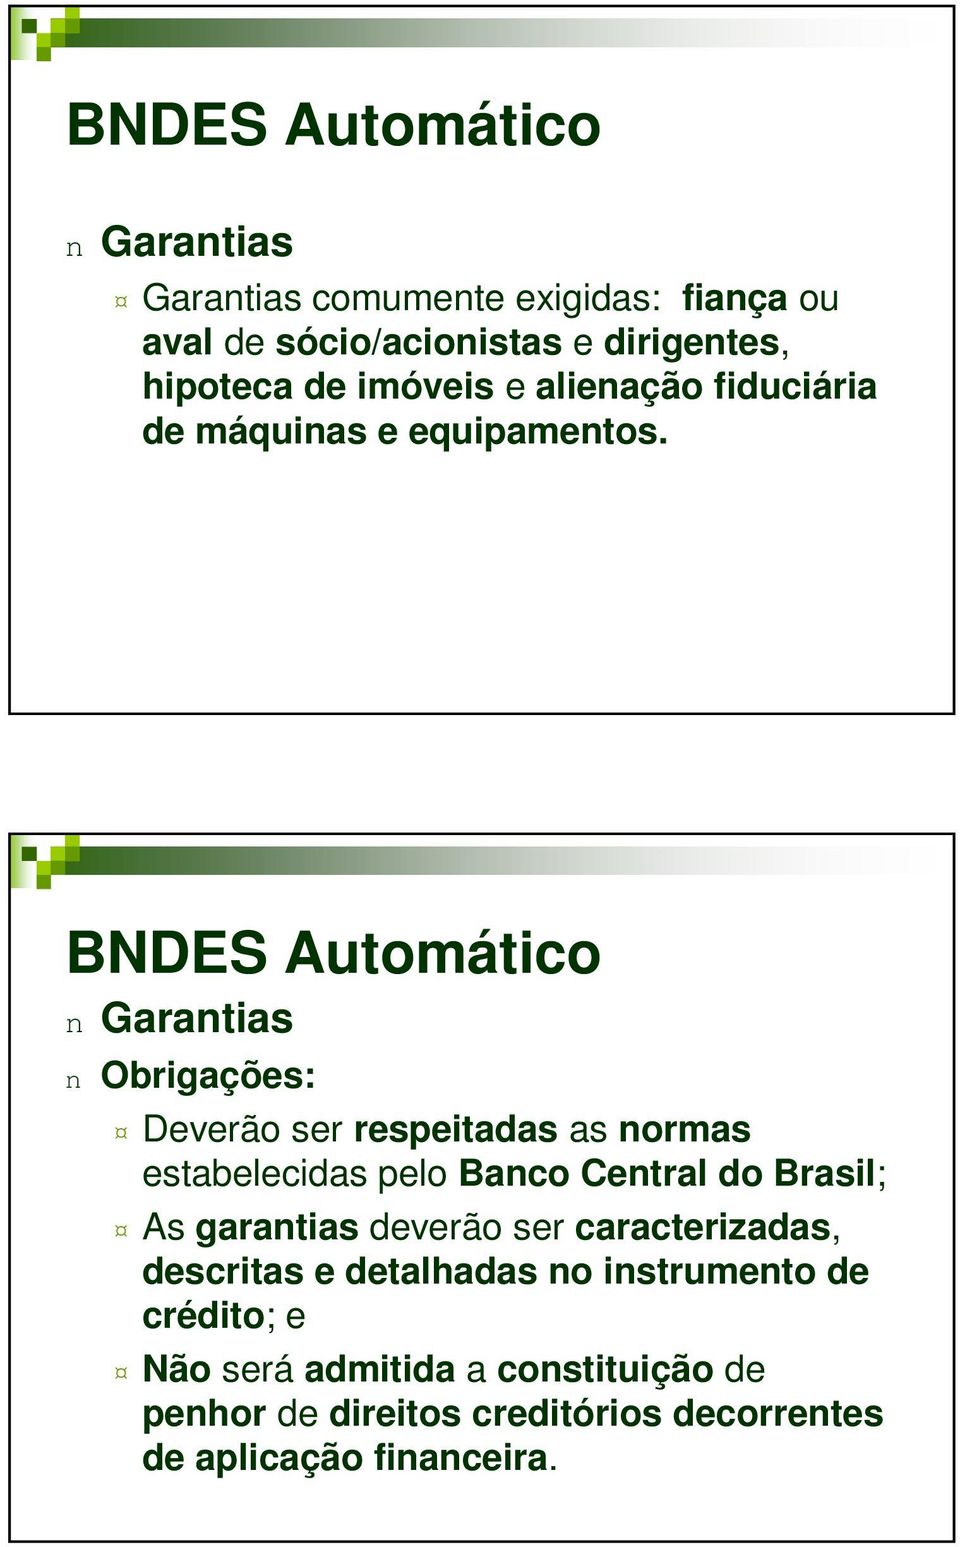 BNDES Automático n Garantias n Obrigações: Deverão ser respeitadas as normas estabelecidas pelo Banco Central do Brasil; As